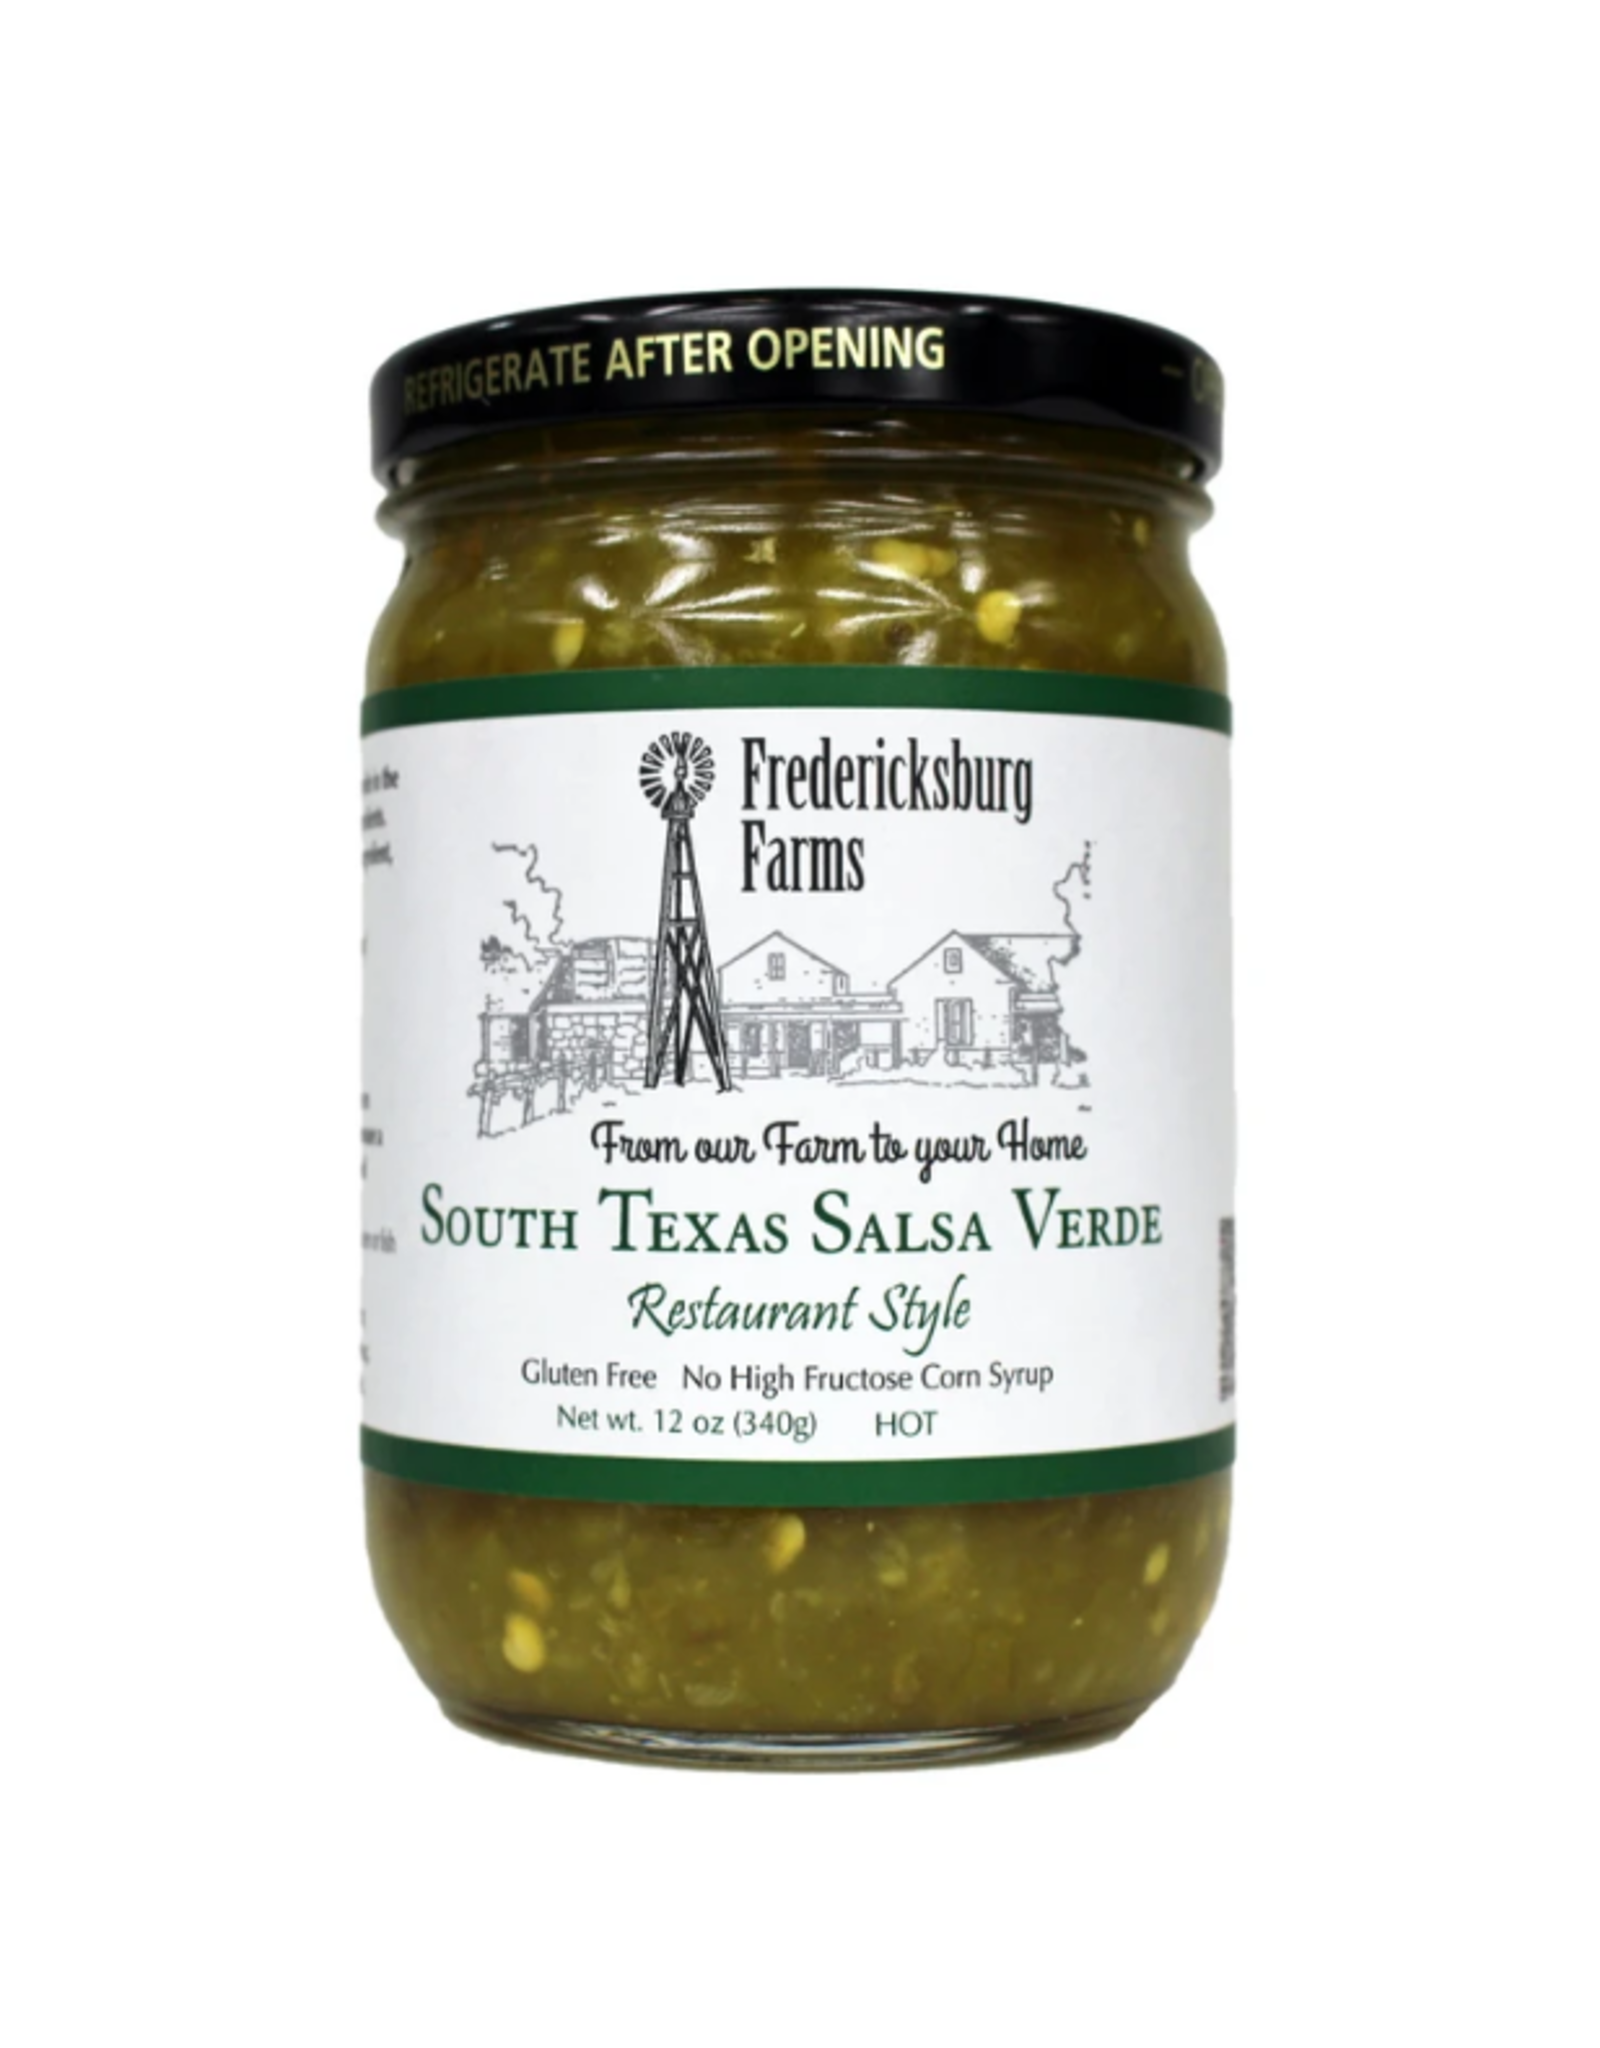 Fredericksburg Farms South Texas Salsa Verde